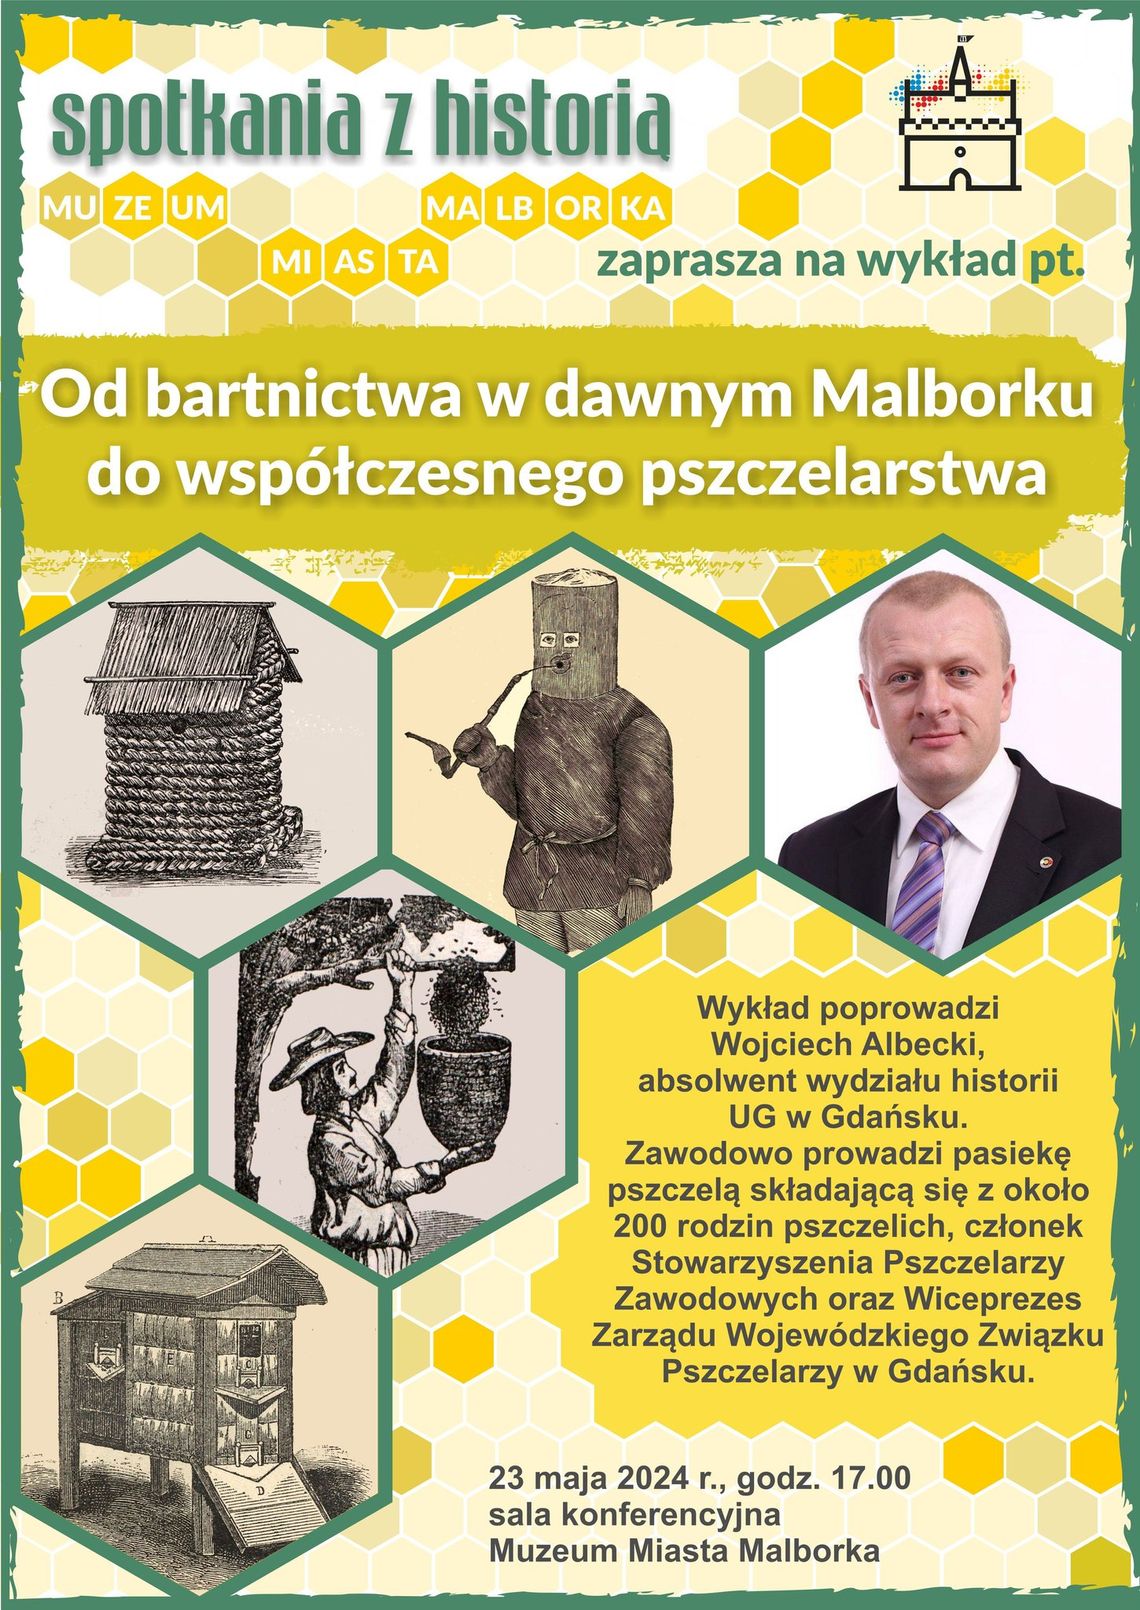 "Od bartnictwa w dawnym Malborku do współczesnego pszczelarstwa". - wykład w Muzeum Miasta Malborka